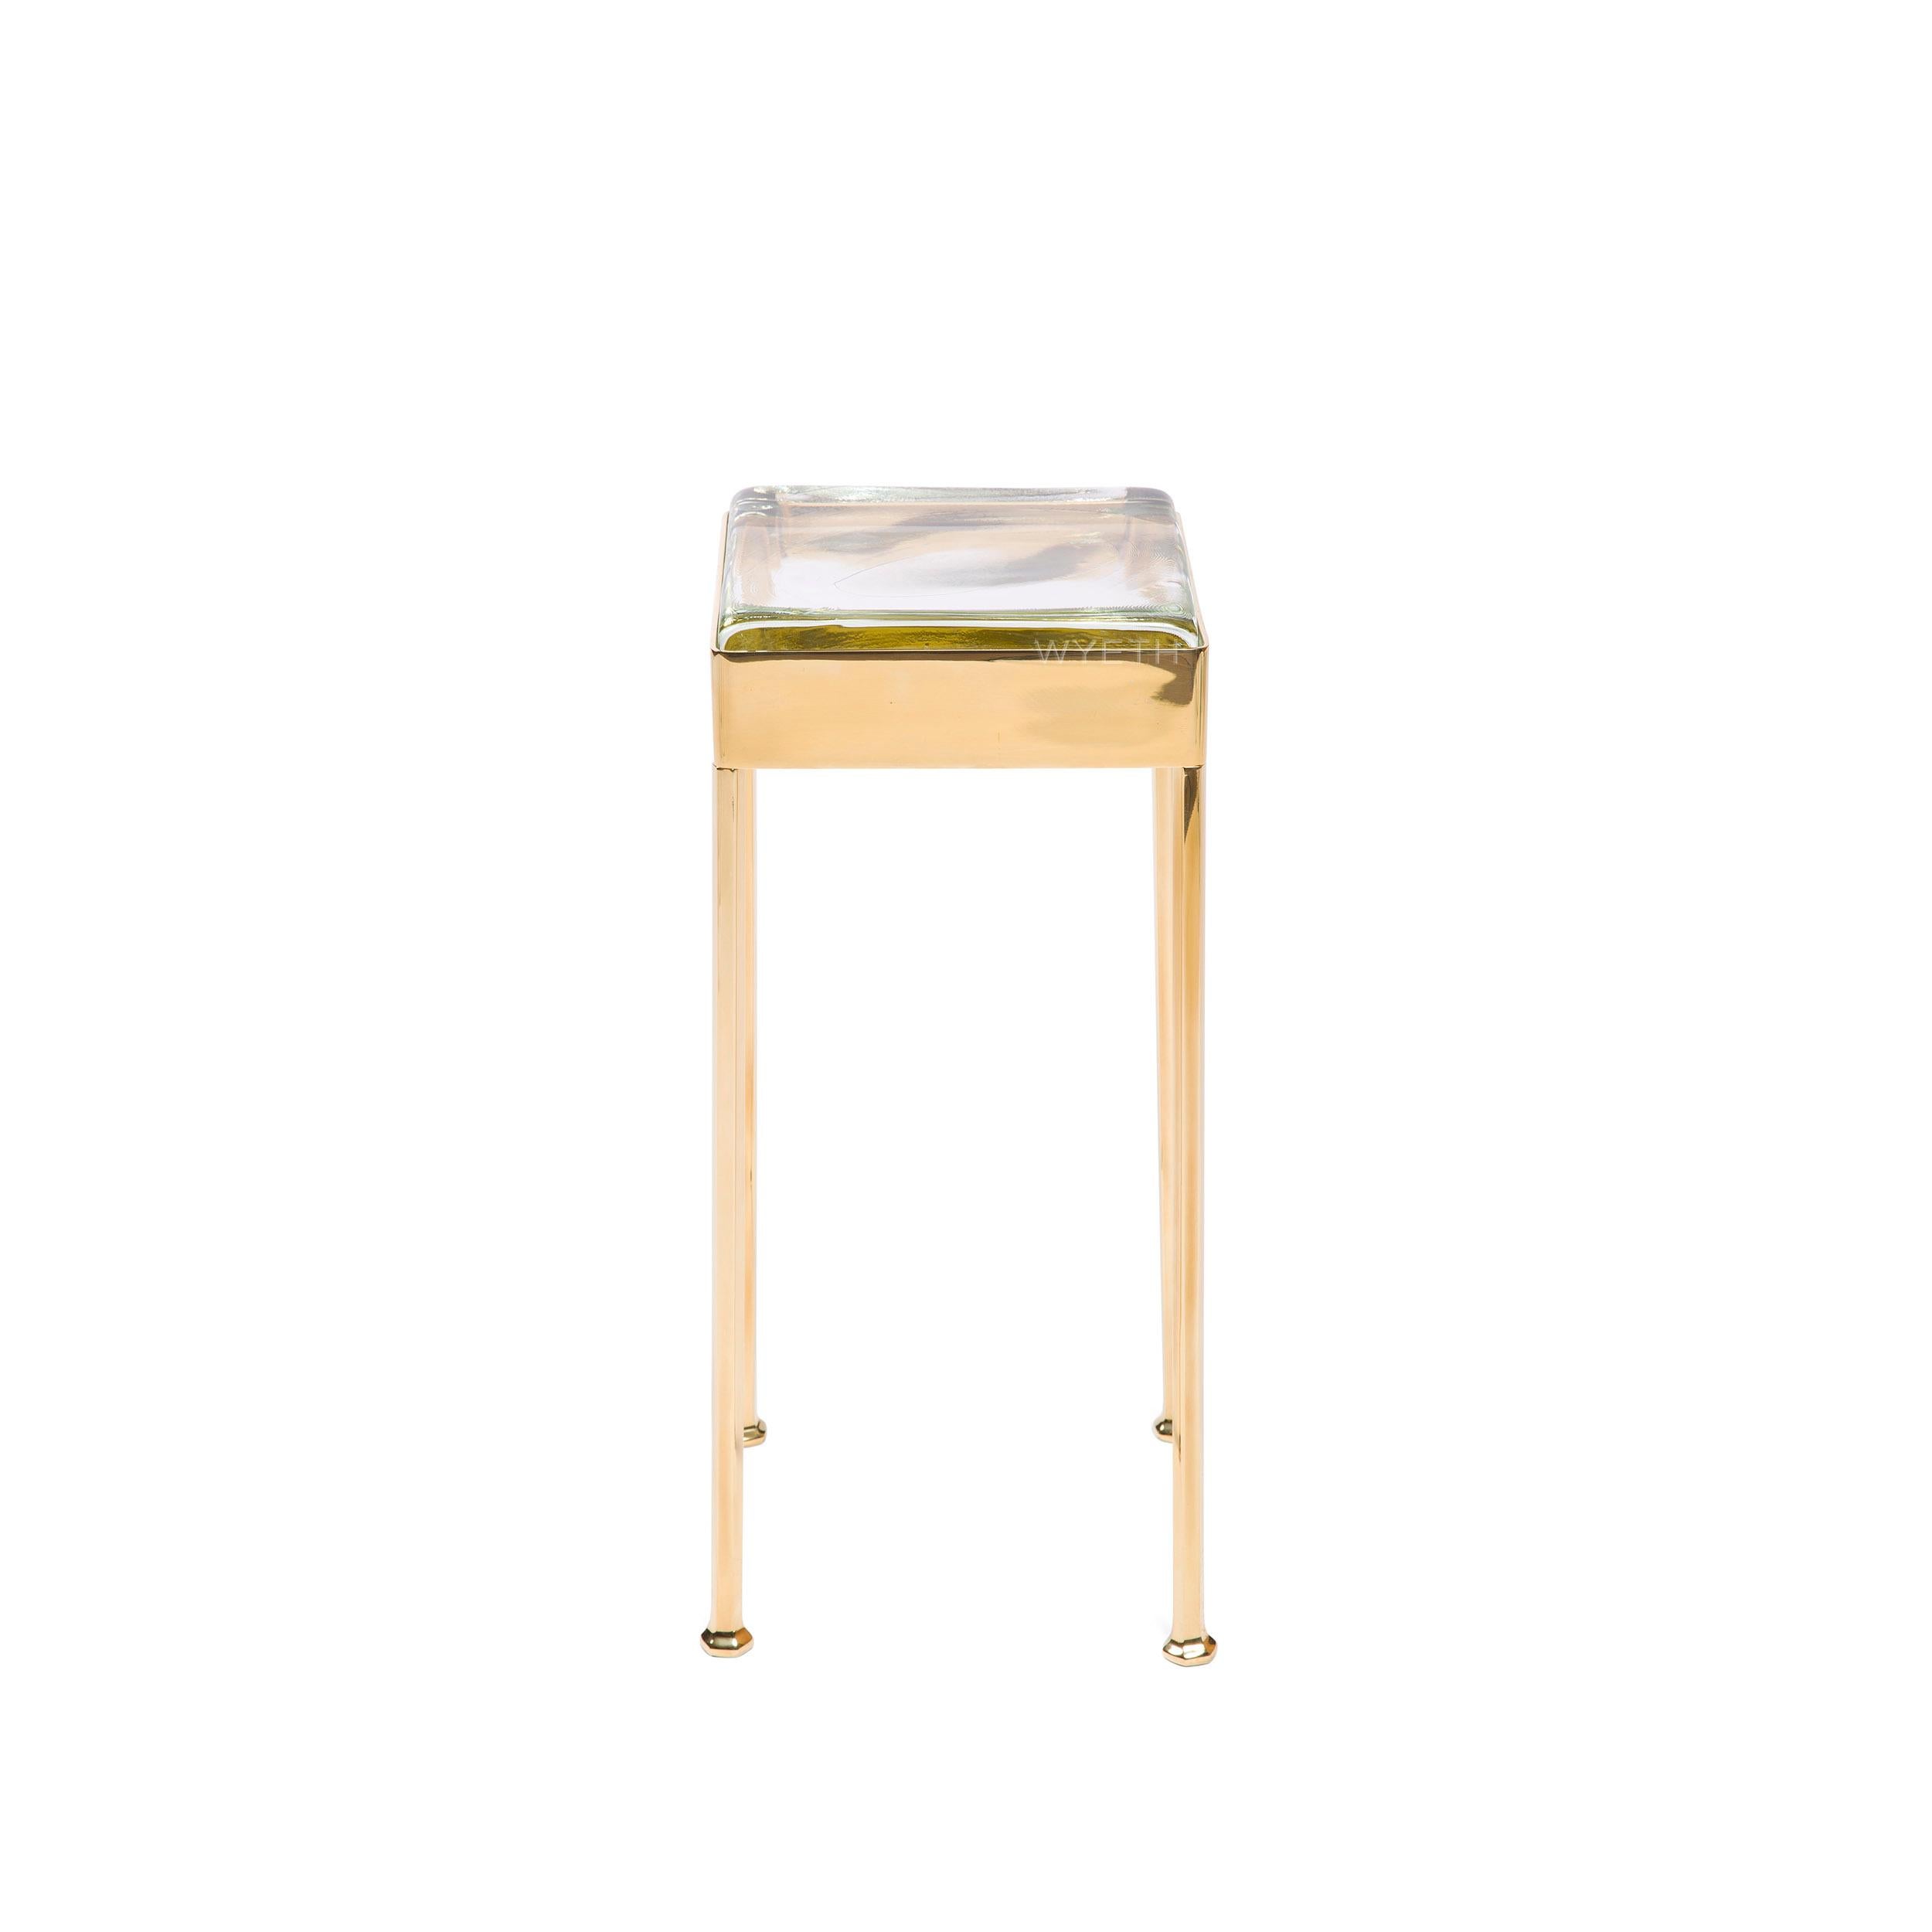 Cocktailtisch aus Bronze mit quadratischer Schürze, die eine Glasfliese hält, die auf vier facettierten Beinen ruht. Erhältlich in polierter, gebürsteter, patinierter und geschwärzter Bronze. Hergestellt vom Wyeth Workshop, NY.